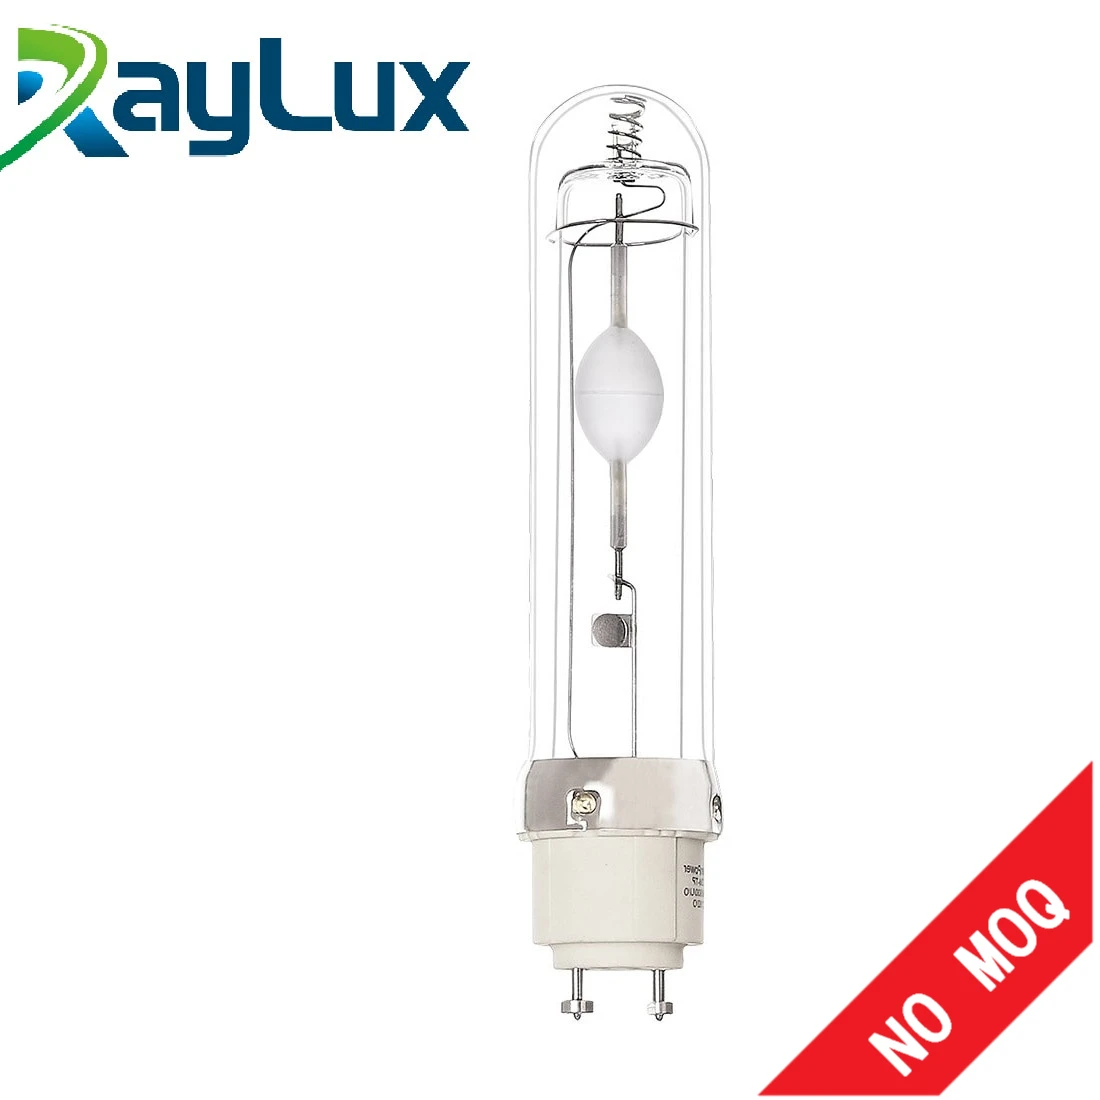 315W raylux CMH lamp grow bulb